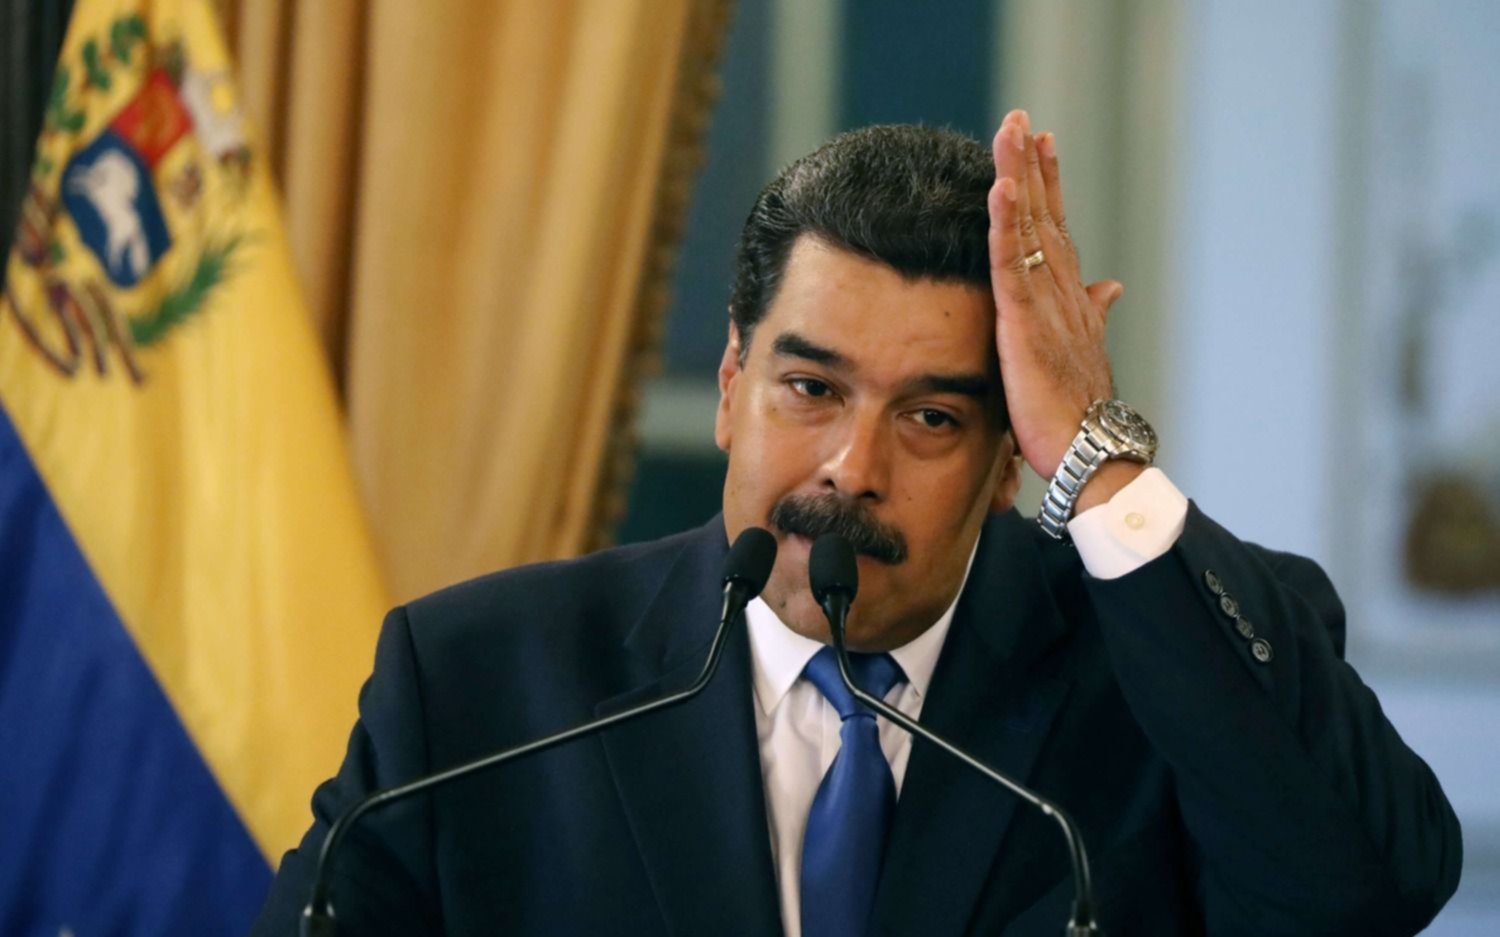 EE.UU le dio otro ultimátum a Maduro: “Tiene un corto plazo para dejar el poder”